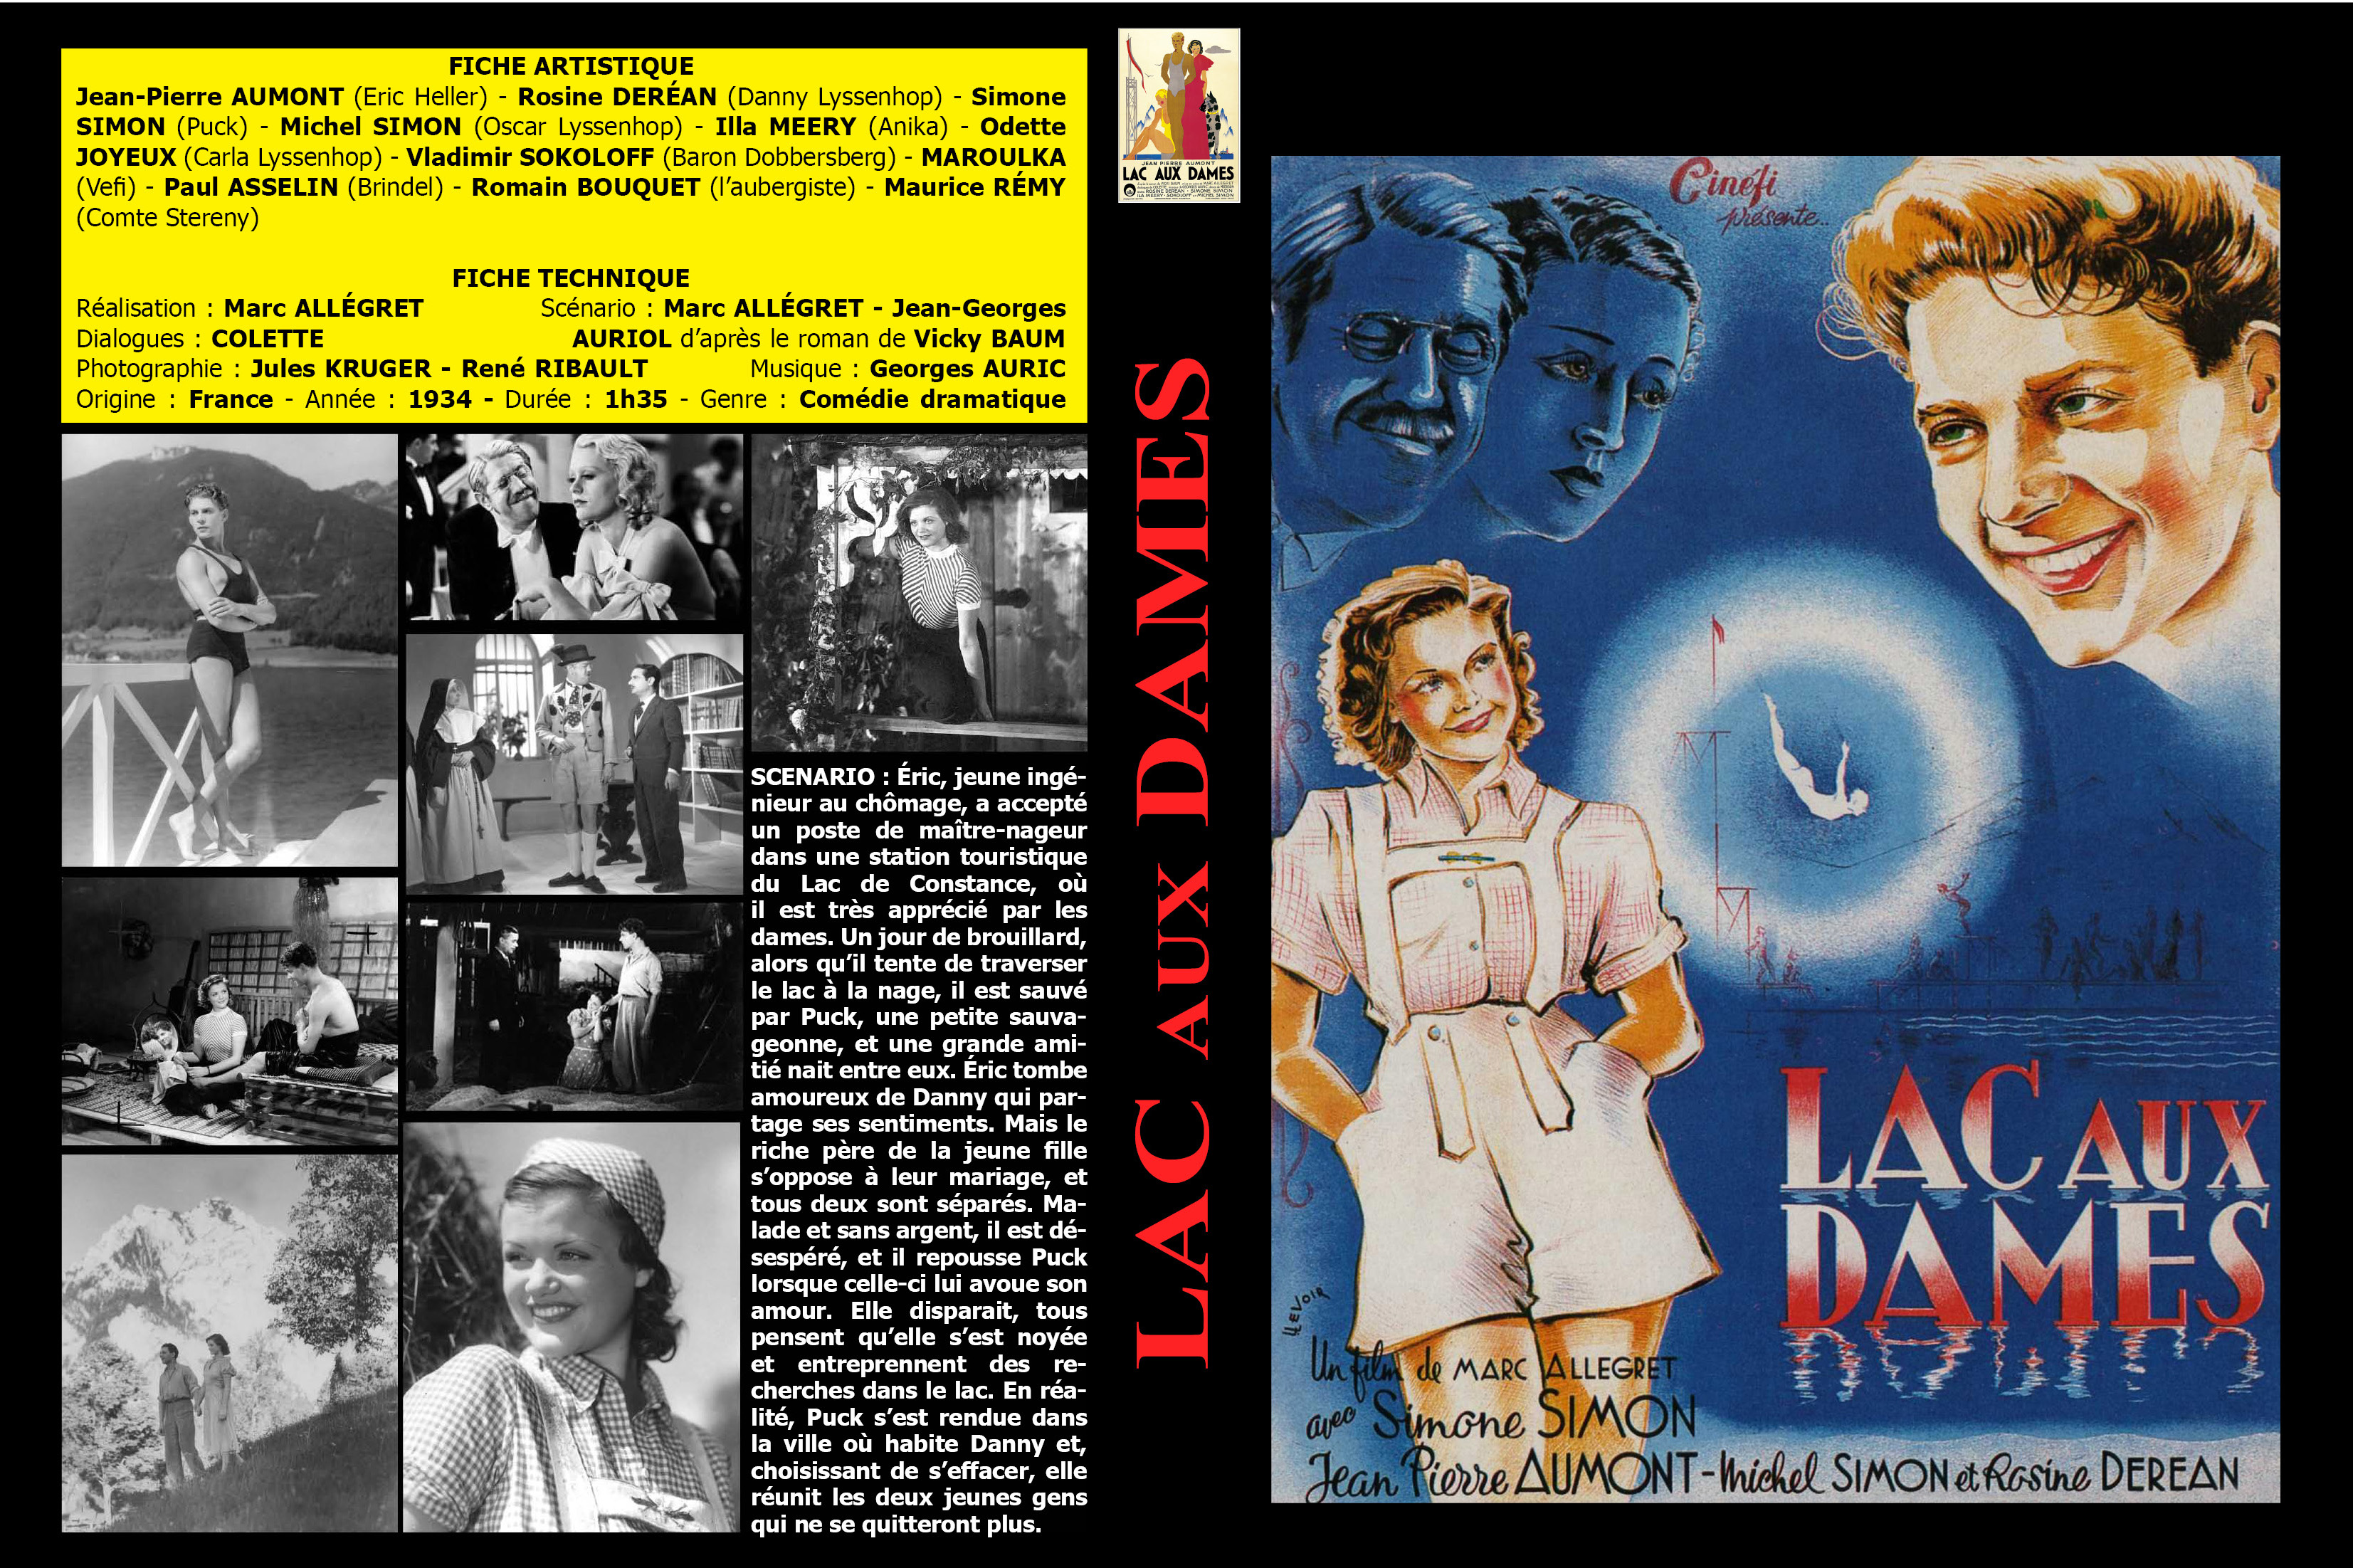 Jaquette DVD Lac aux dames custom